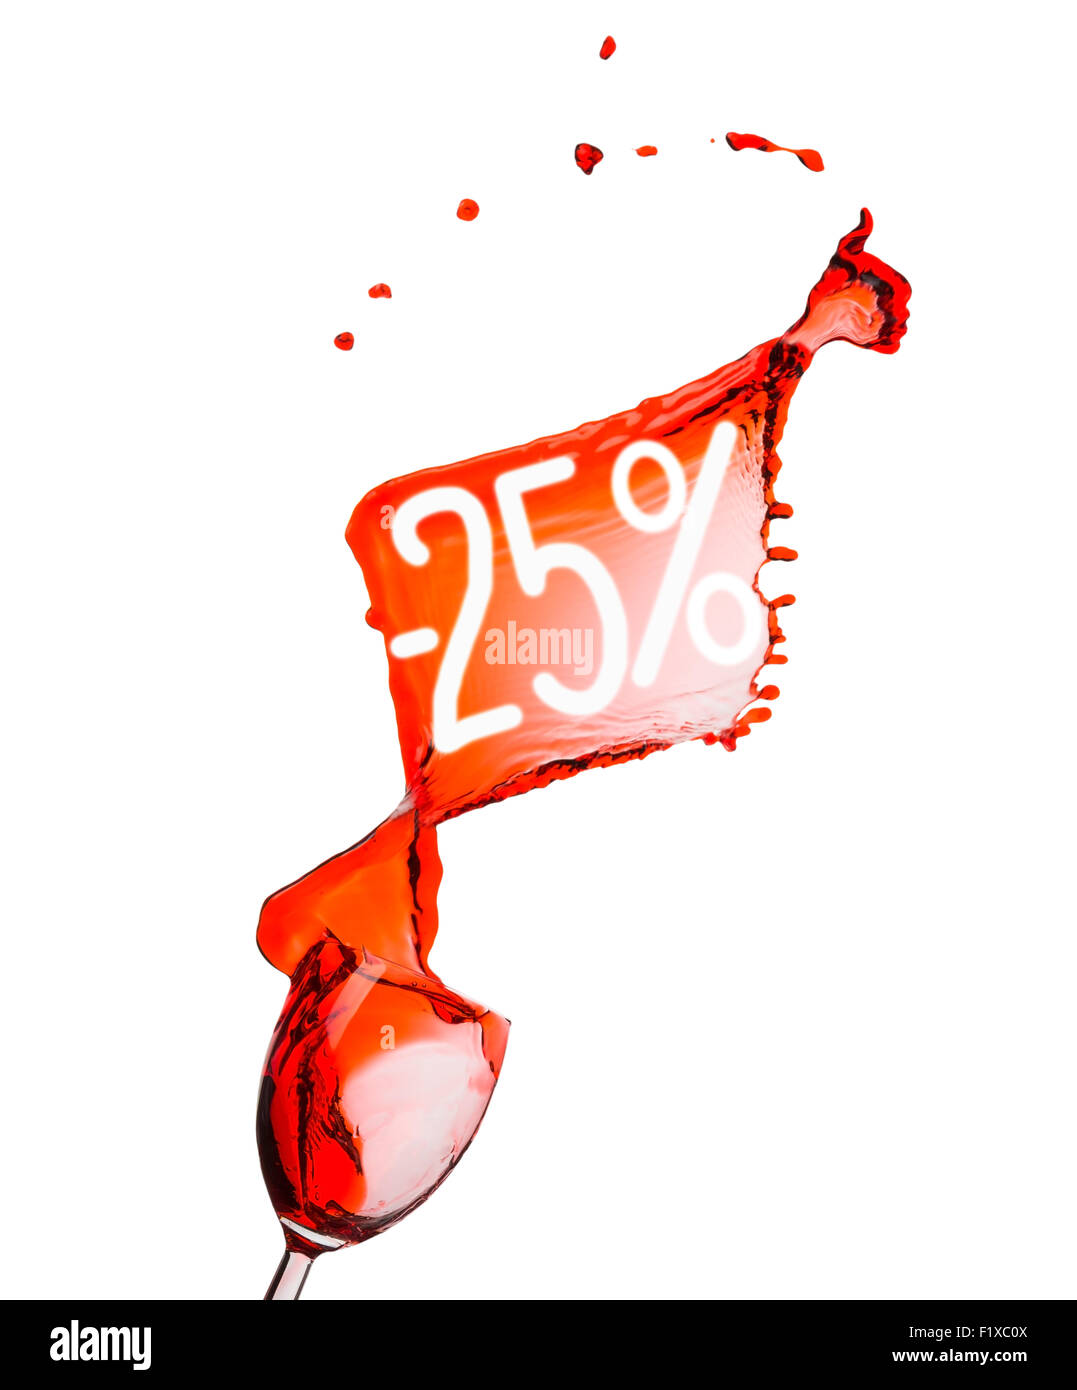 Vino rosso splash. 25% di sconto. Isolato su sfondo bianco. Foto Stock